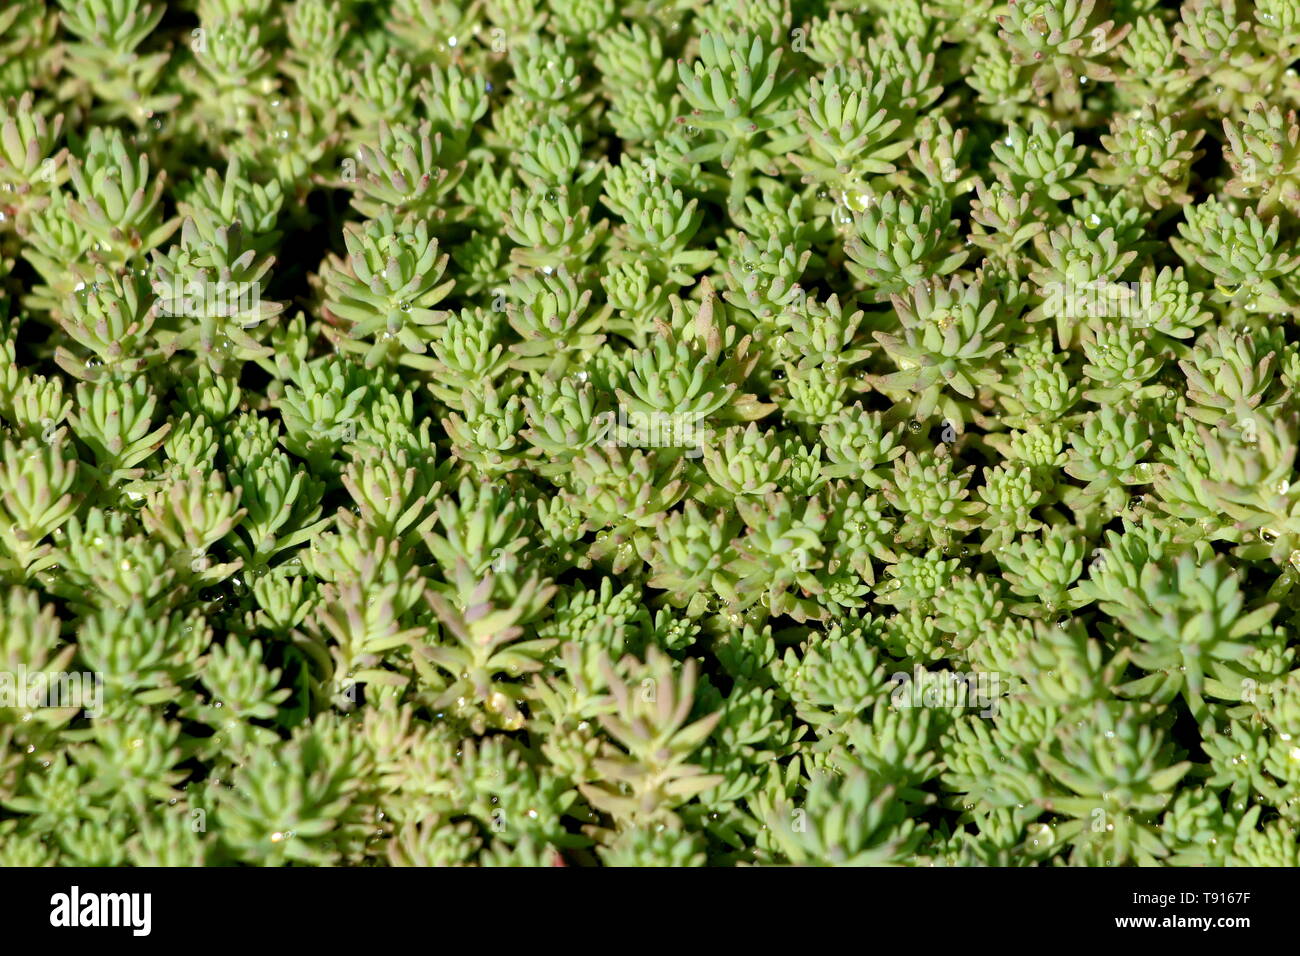 Dicht bepflanzte Sedum oder Mauerpfeffer winterharte Sukkulenten Bodendecker  Stauden grüne Pflanze Hintergrund Textur mit dicken saftigen Blätter und  fleischige Stiele Stockfotografie - Alamy